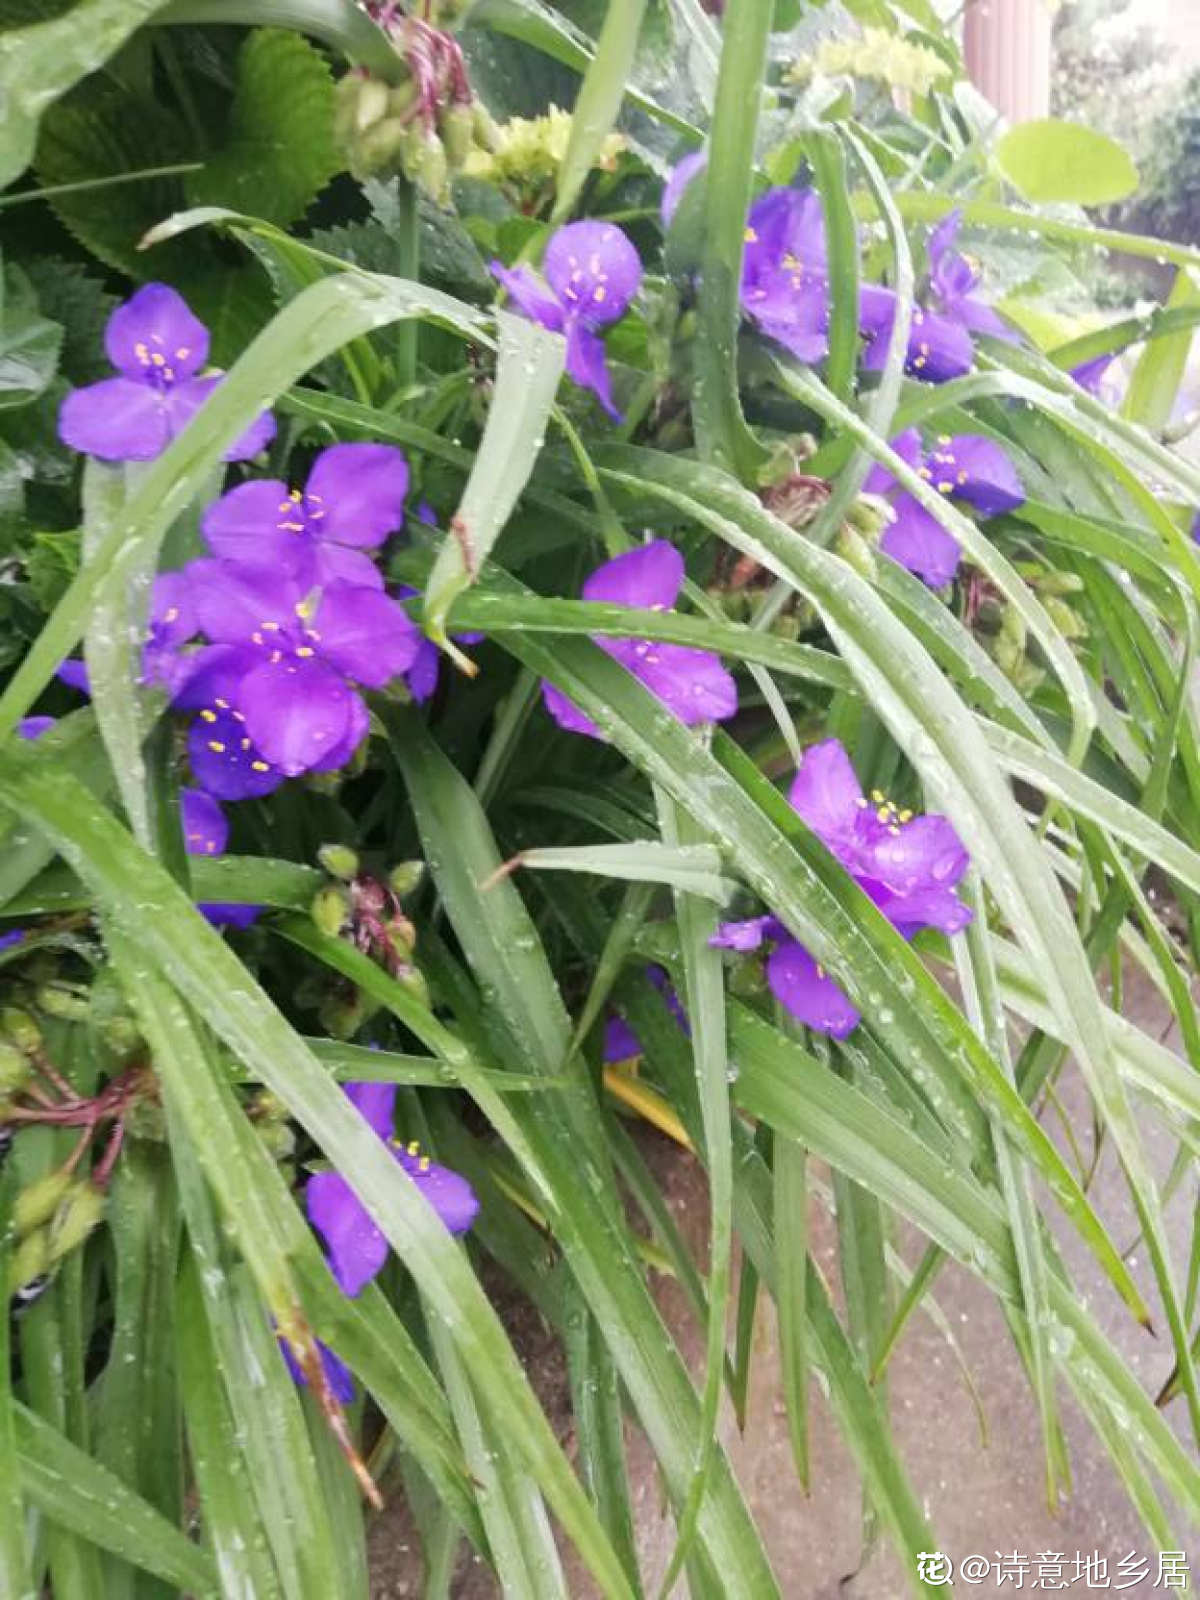 紫柳（又称墨西哥鼠尾草）叶片久状披针形，对生，上具绒毛，有香气。轮伞花序，顶生，花紫色，具绒毛，白至紫色。|昆明花仙子园林绿化工程有限公司